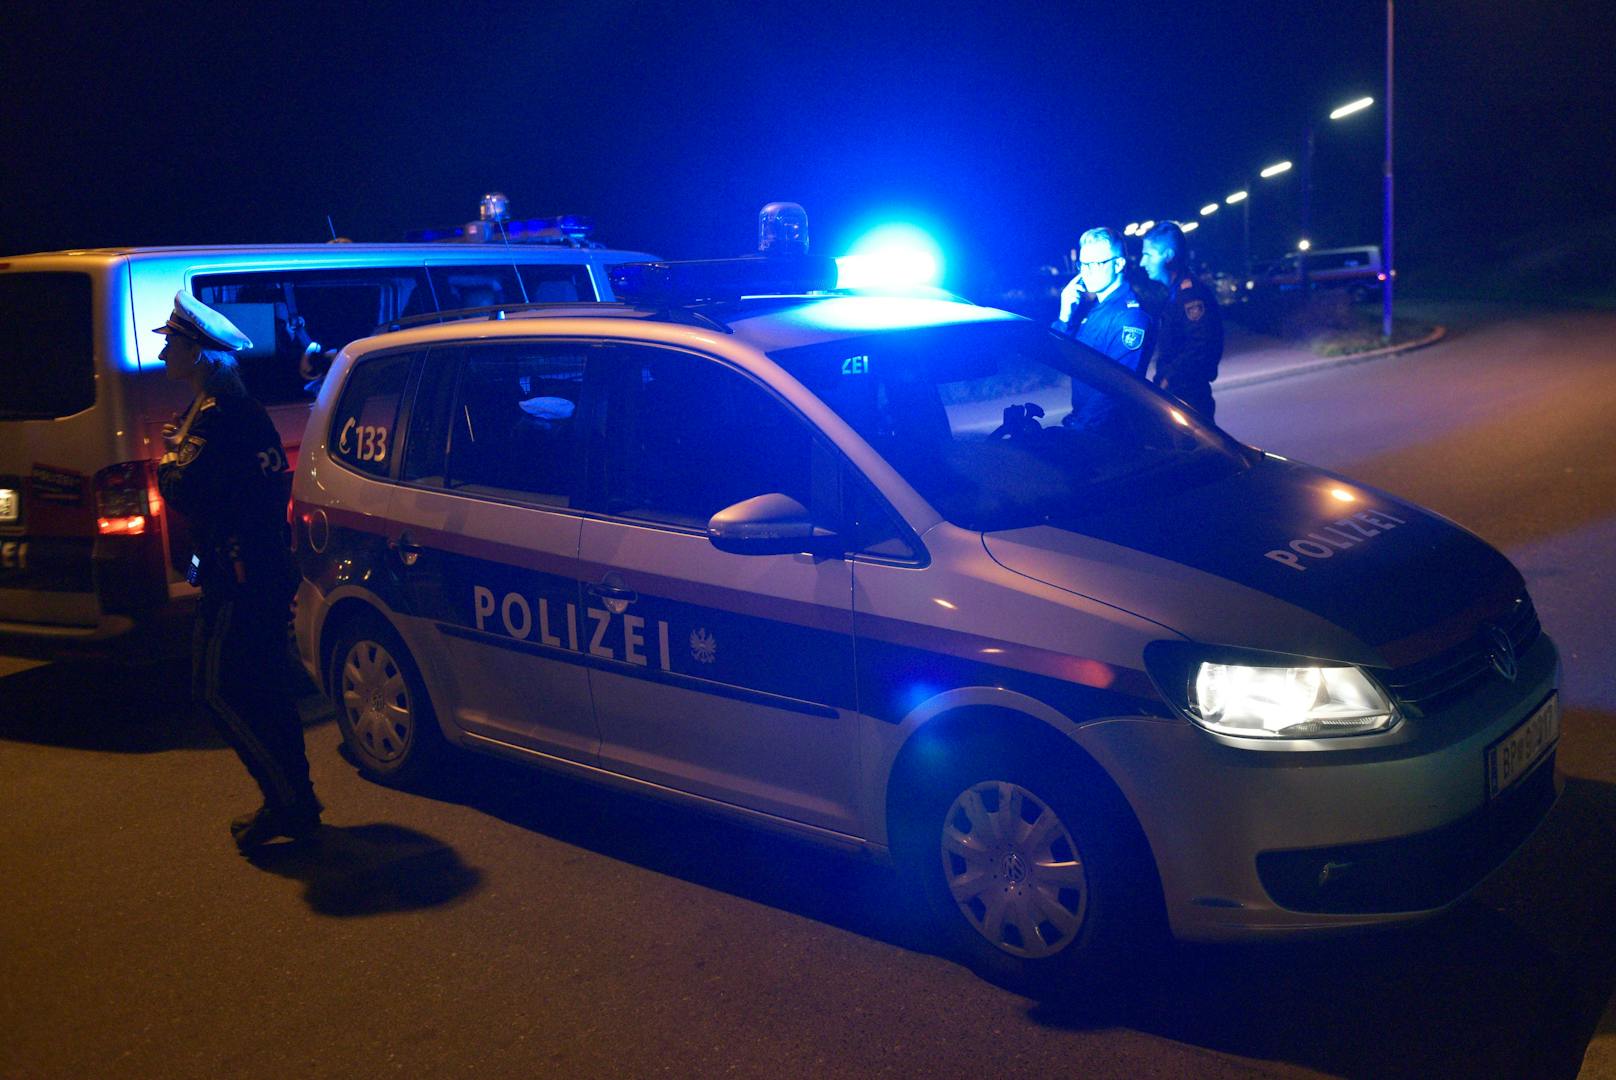 Die Polizei musste am Sonntagabend in Wien-Floridsdorf ausrücken. (Symbolbild)